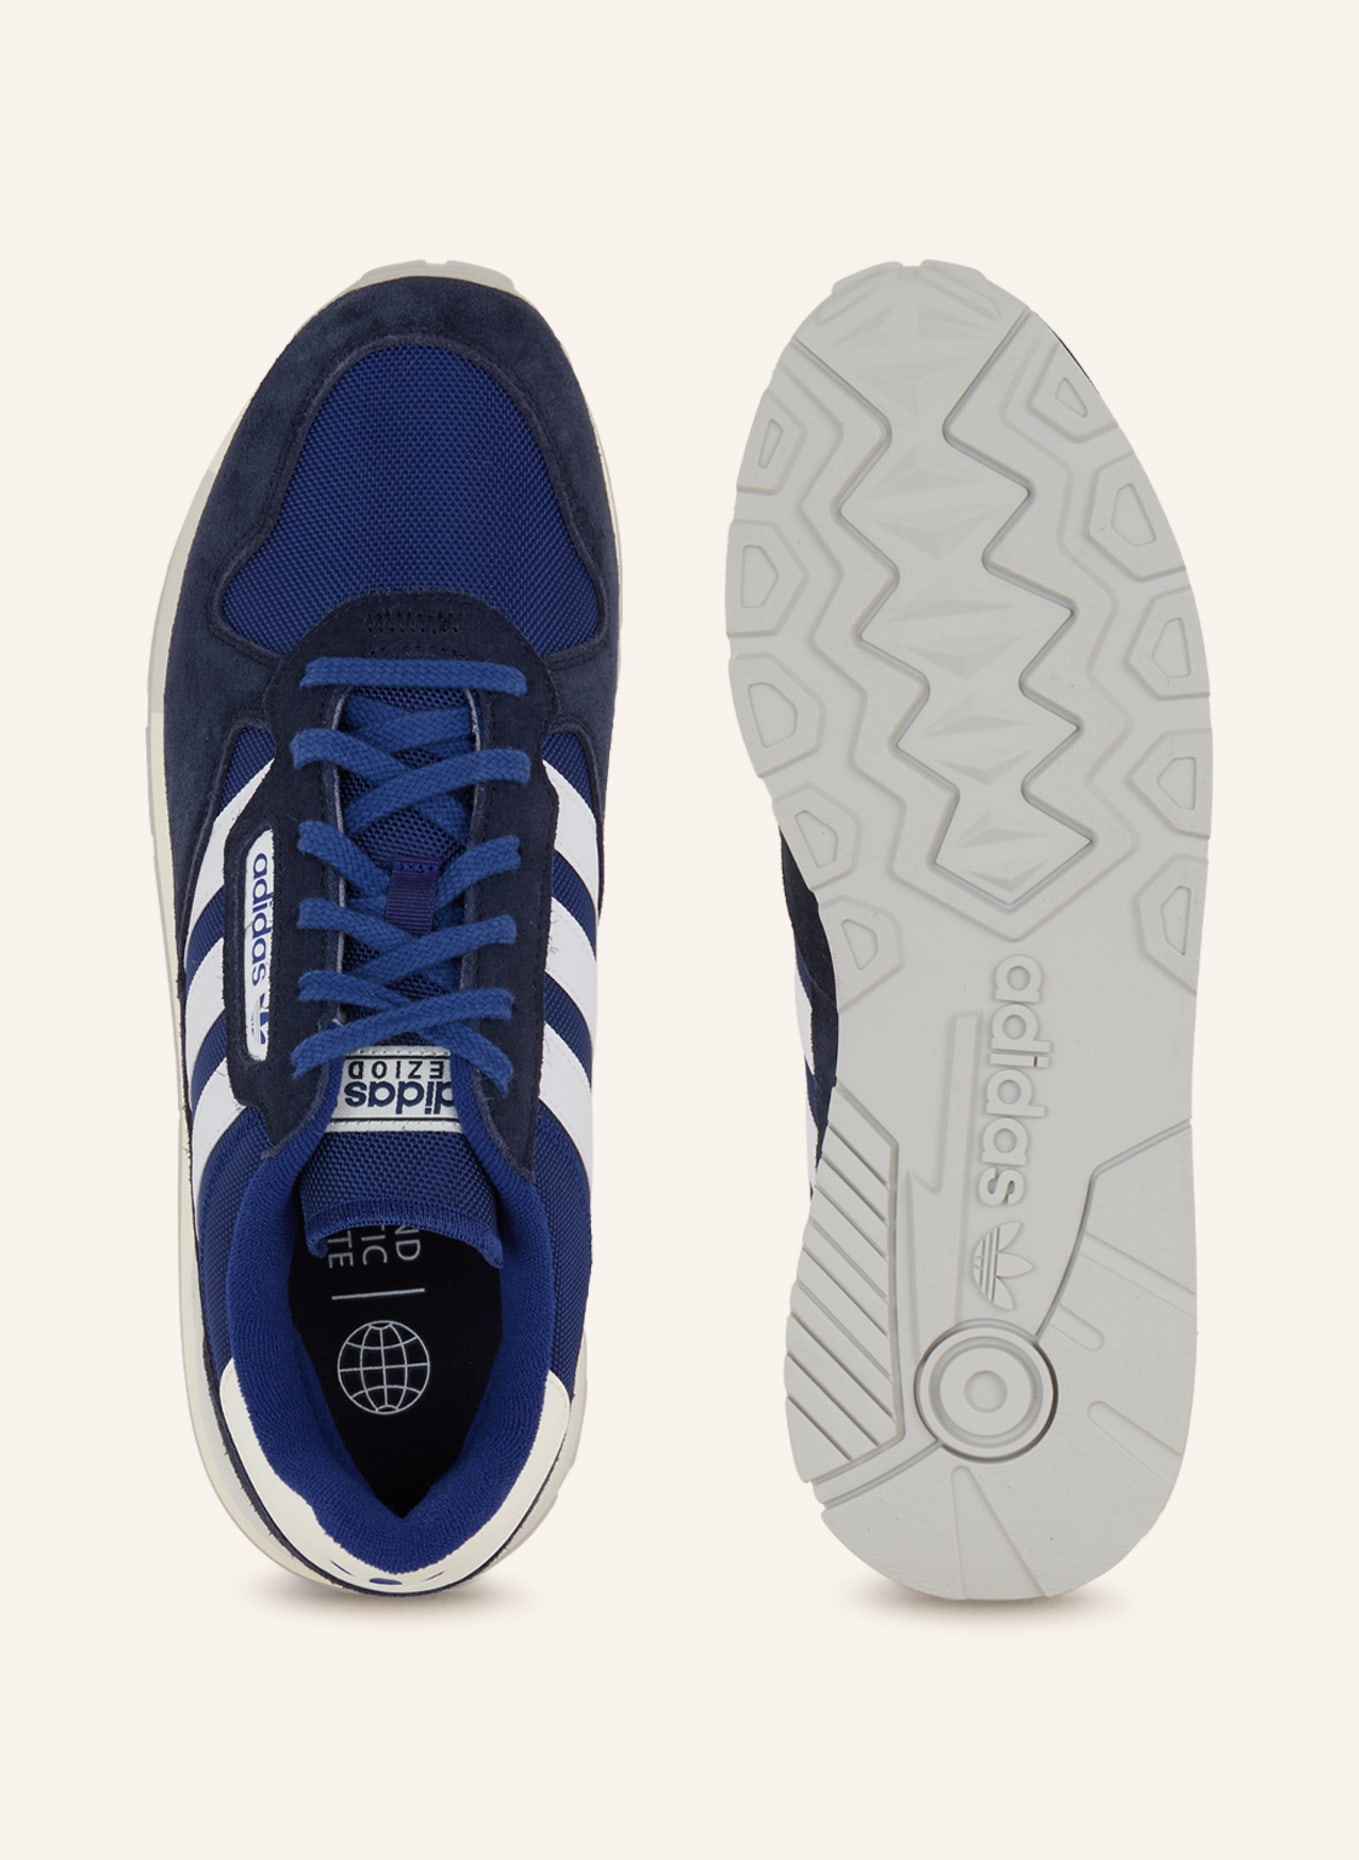 Originals dark blue/ adidas white/ 2 Sneakers TREZIOD blue in